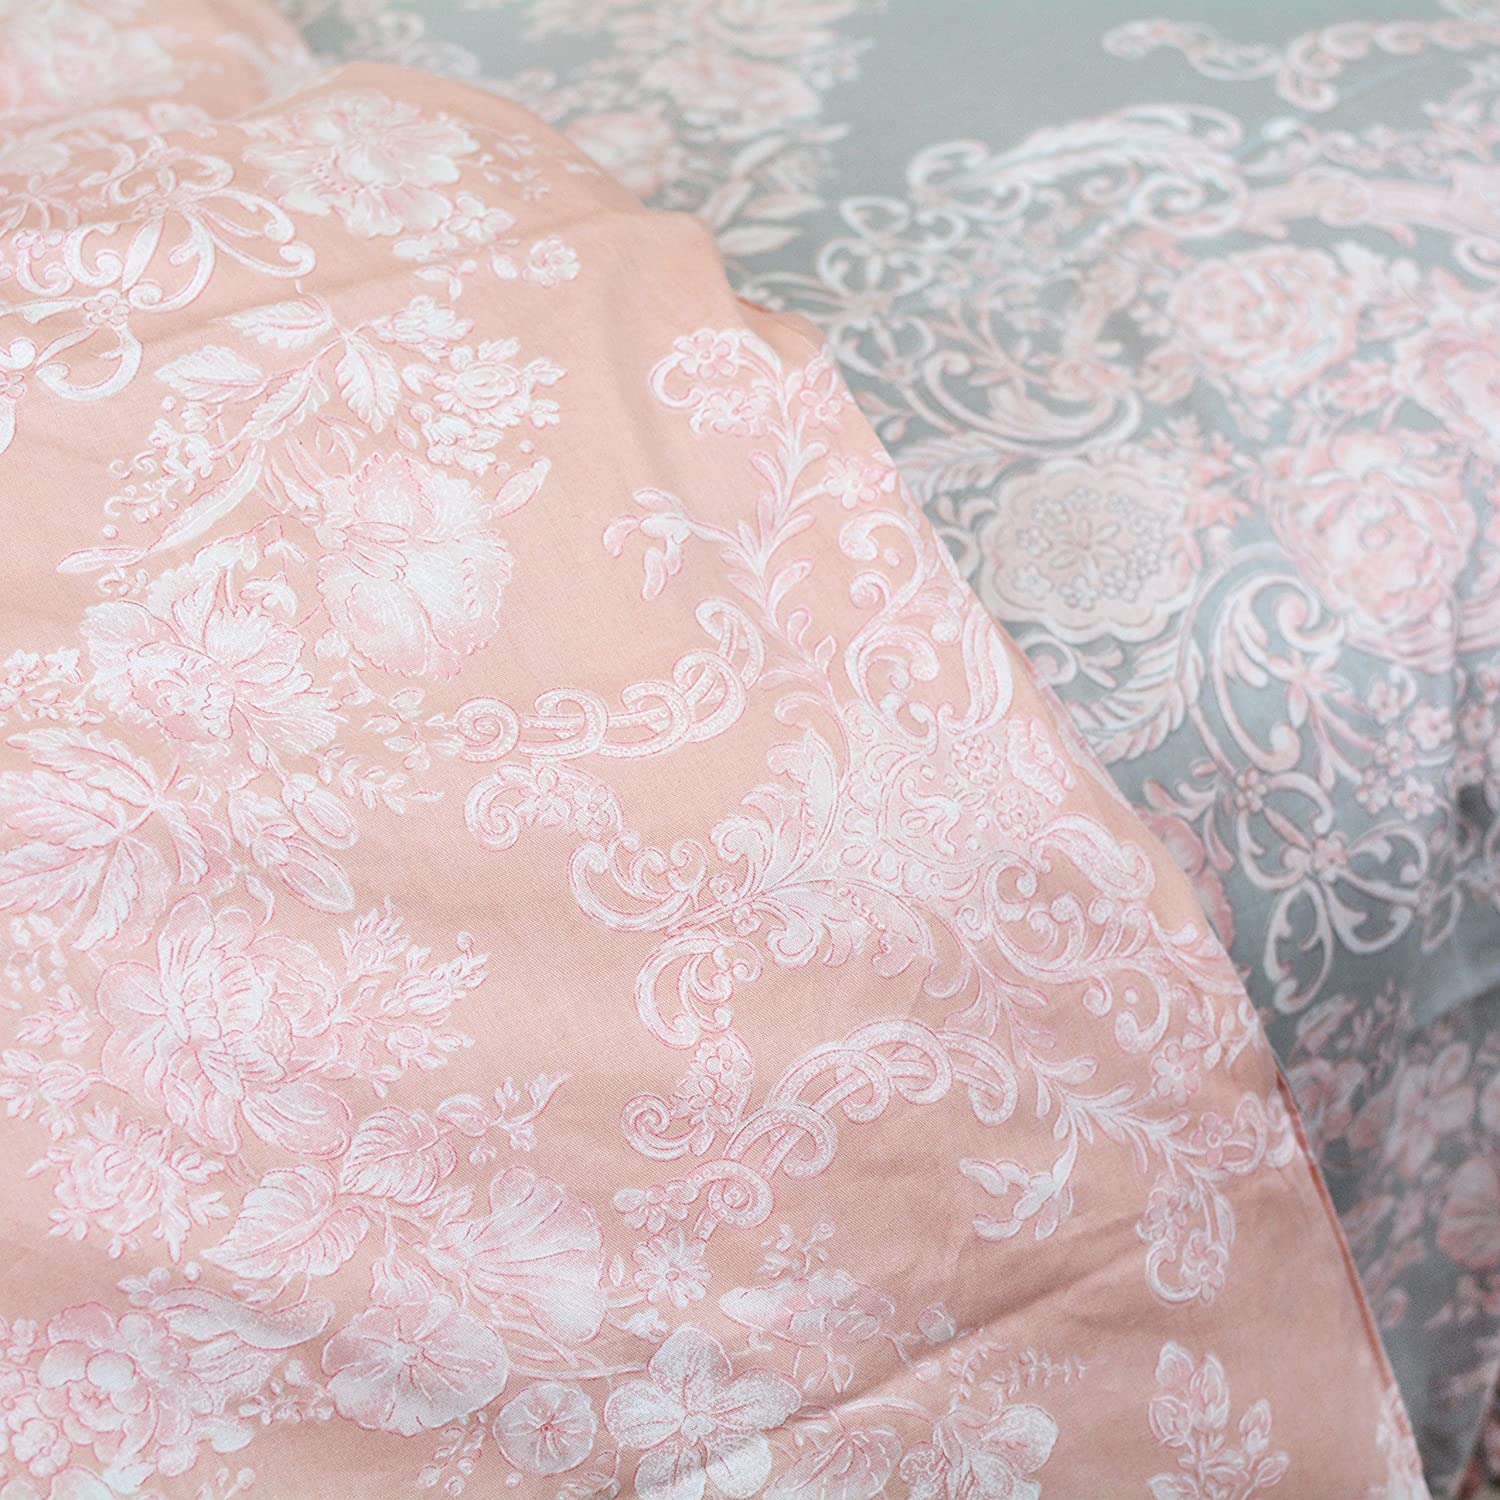 Brandream Blush Pink Bedding Sets Full Size Girls Damask Flower Bedding 